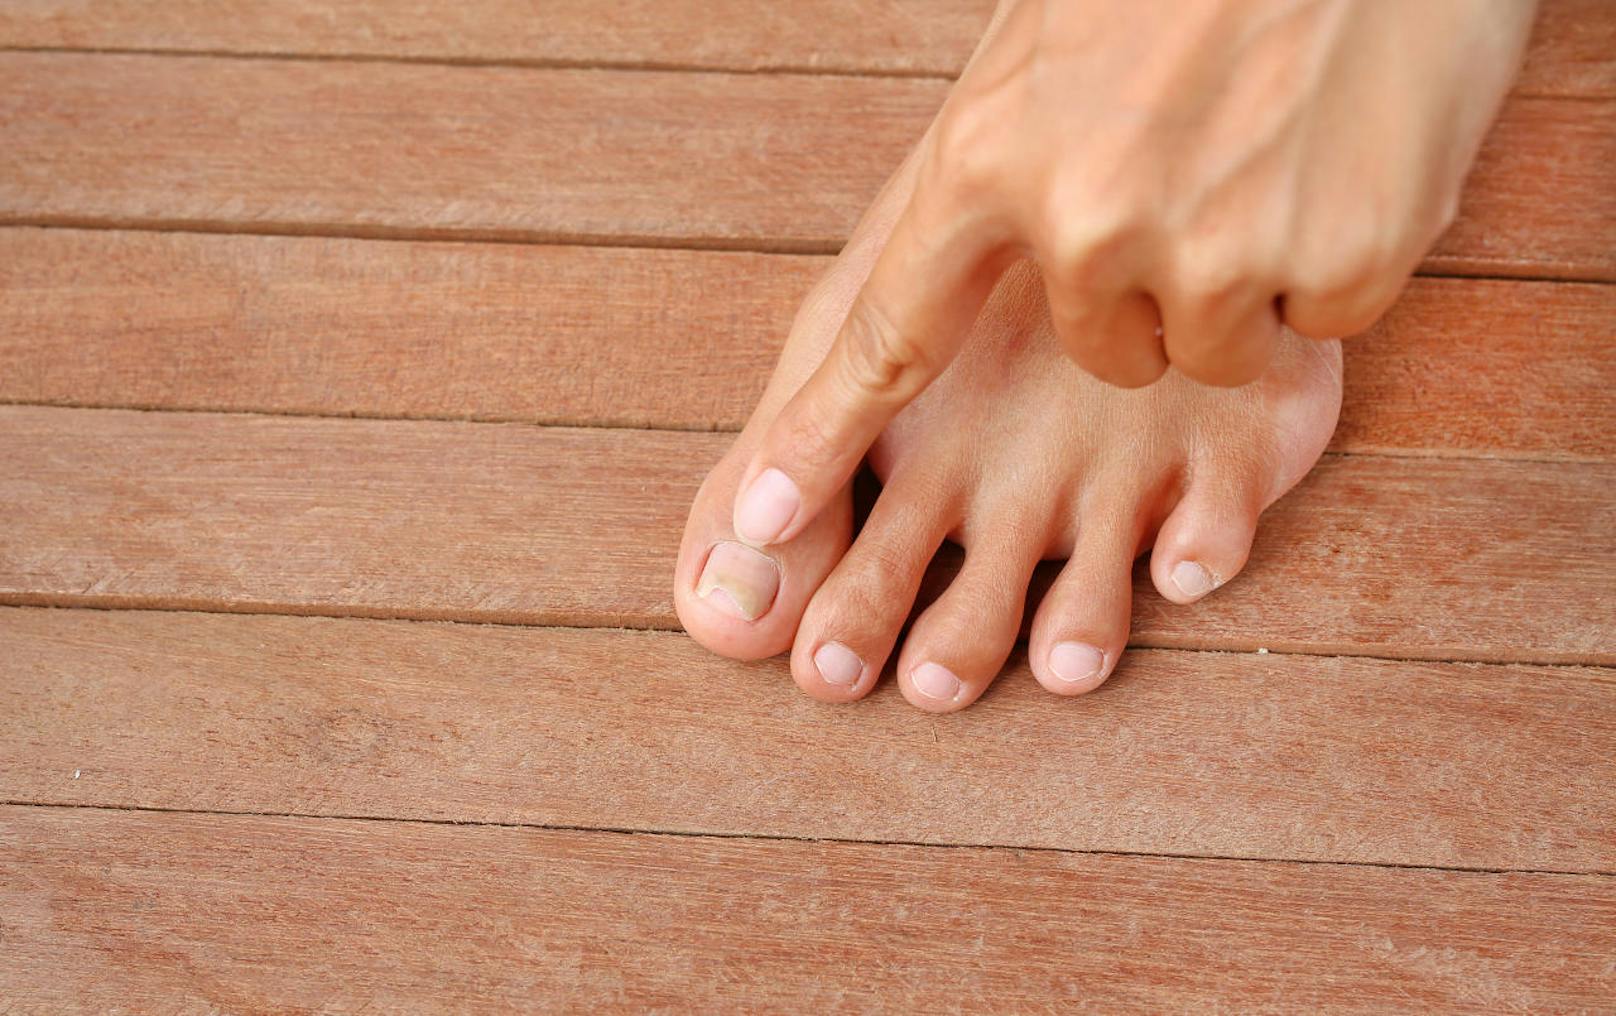 <b>Brüchige Nägel</b>
Das womöglich häufigste Fußnagel-Symptomsind brüchige Nägel. Die möglichen Ursachen: Stress, Mineralstoffmangel oder der Einsatz von zu viel Nagellackentferner. Und was hilft? Zum Beispiel glättende Nagelöle oder Tinkturen mit Urea und Panthenol. 